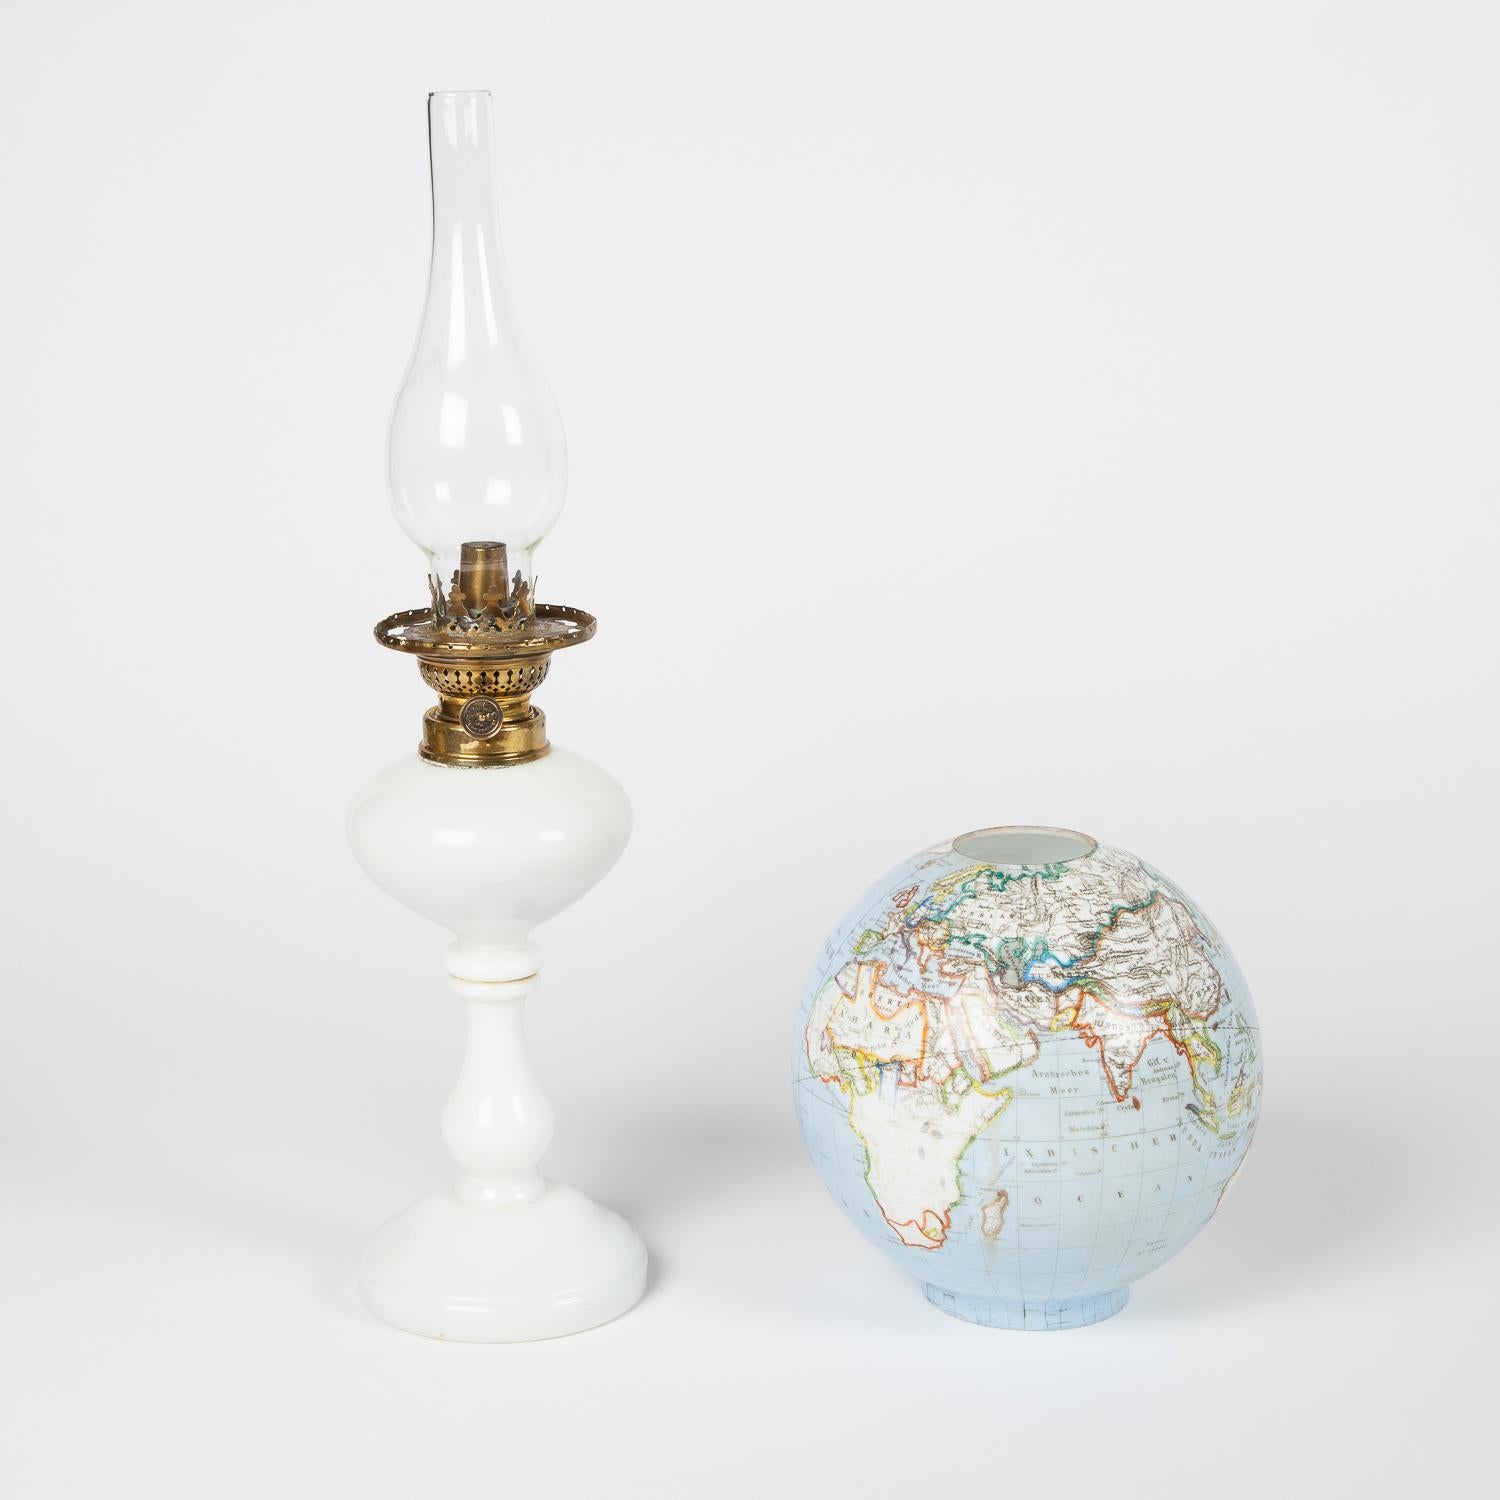 Lampe à huile en verre opalescent de la fin du XIXe siècle avec un abat-jour en forme de globe lumineux, Bohème, vers 1885.

Pays et mers indiqués en allemand.

Fabriqué par Stelzig, Kittel & Co.

Marqué Brevet No.34409. (Stelzig, Kittel & Co,